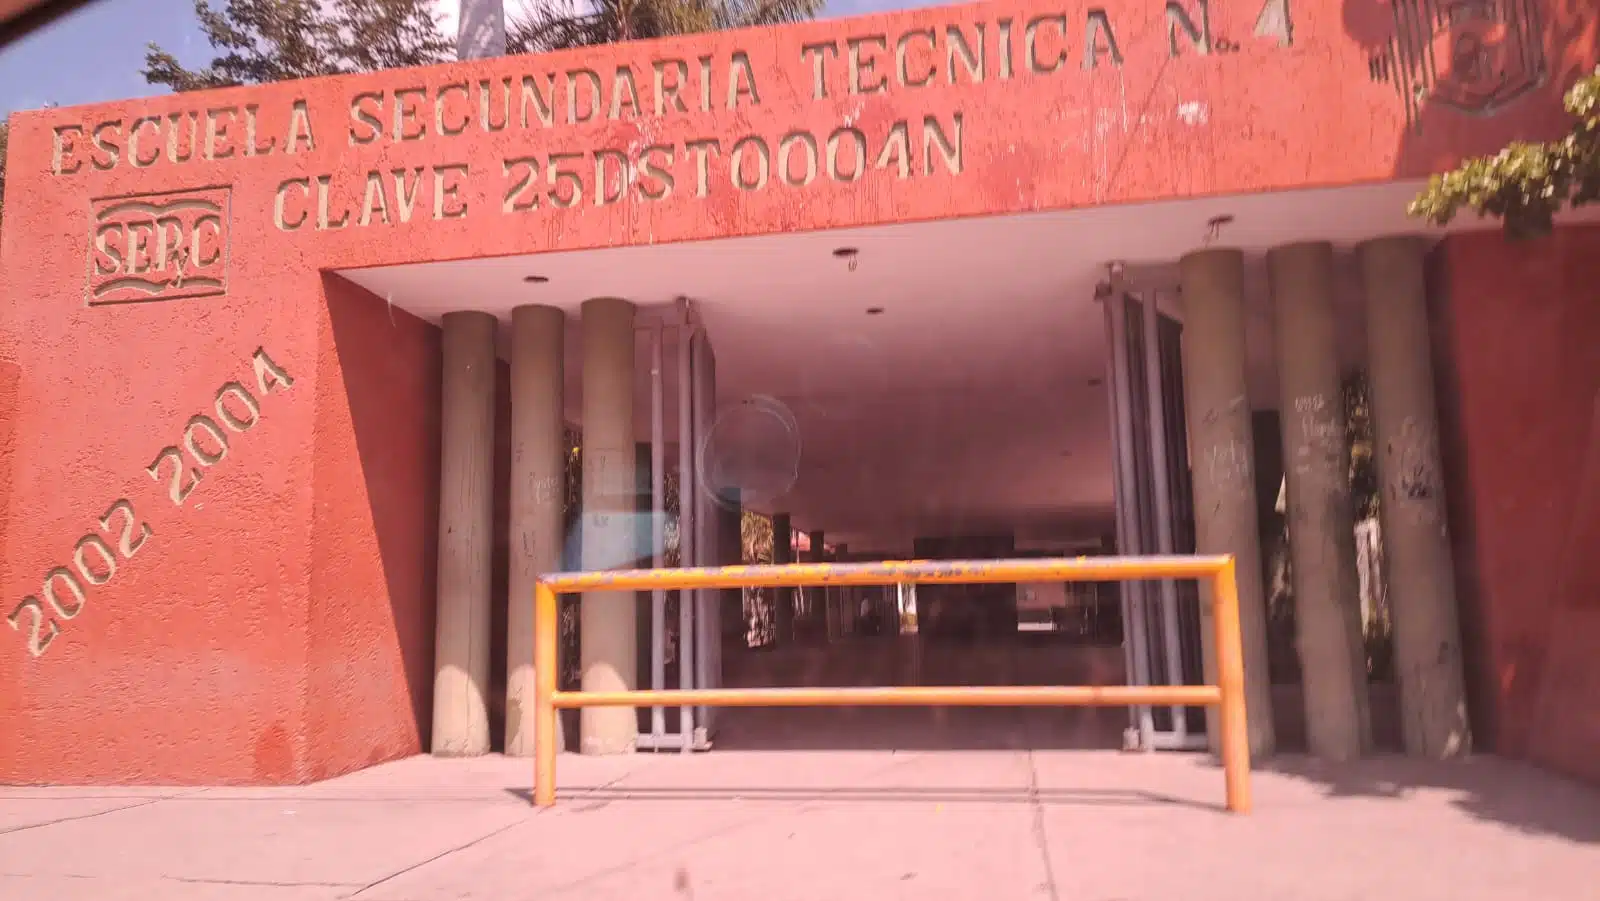 Escuela Secundaria Técnica número 4 en Guasave